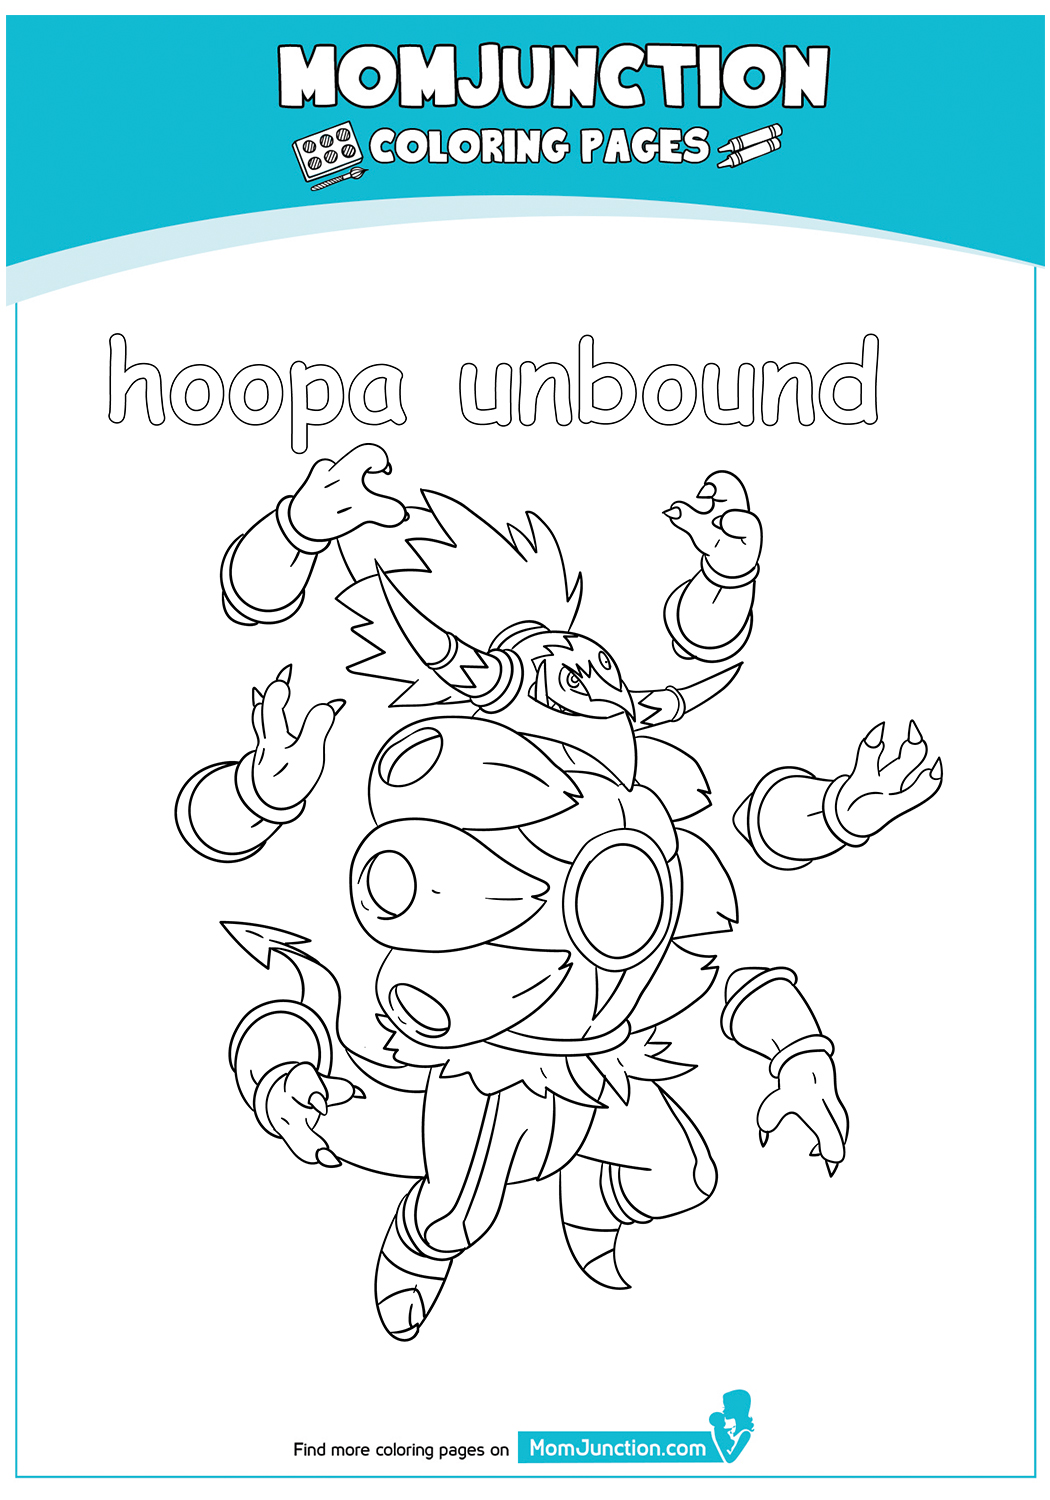 hoopa-unbound-17